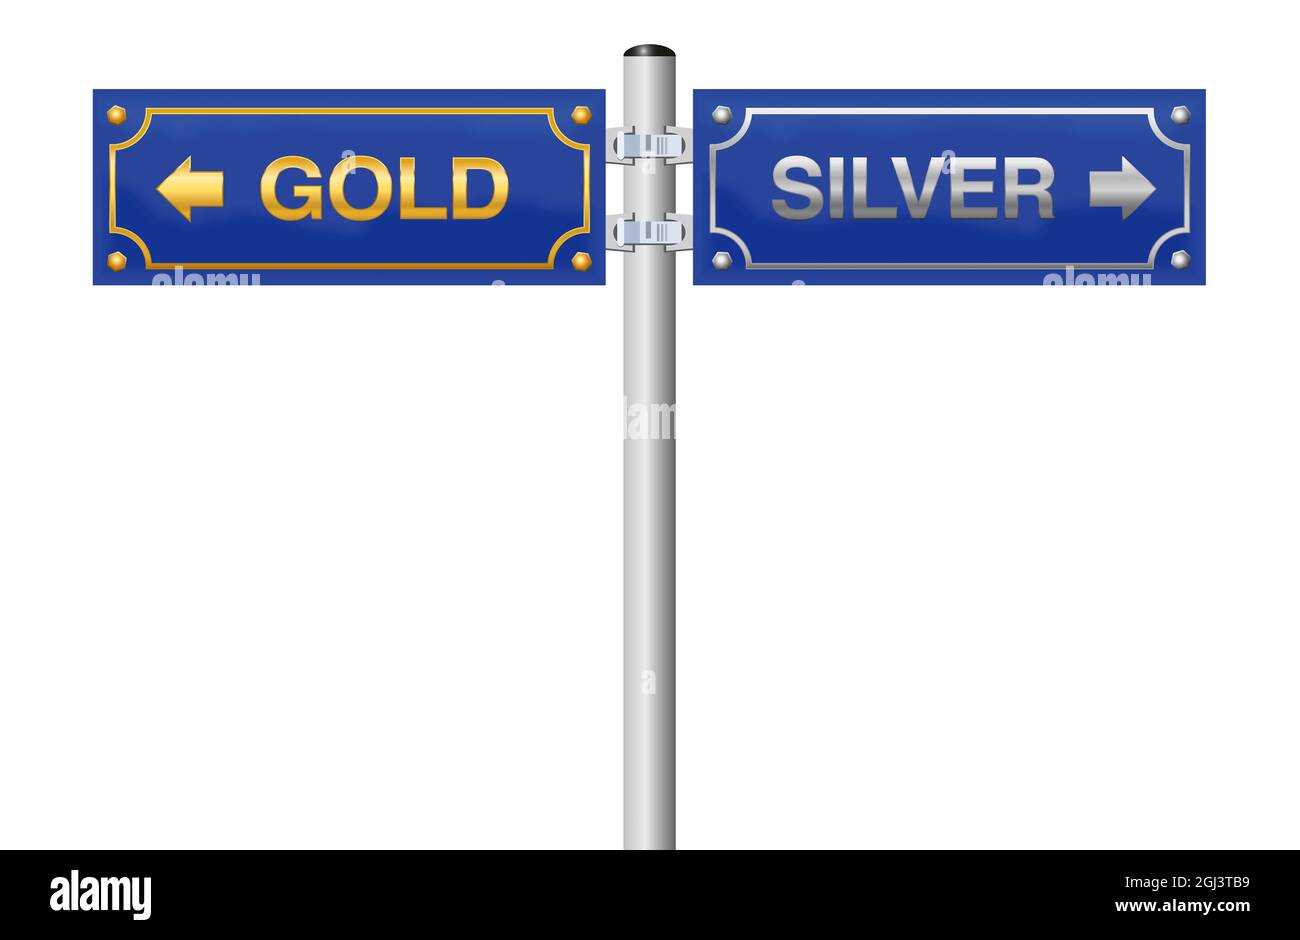 PANNEAU DE rue ARGENT OR, panneau bleu - symbolique pour la décision d'acheter, de vendre ou d'investir dans l'or ou l'argent - illustration sur fond blanc. Banque D'Images